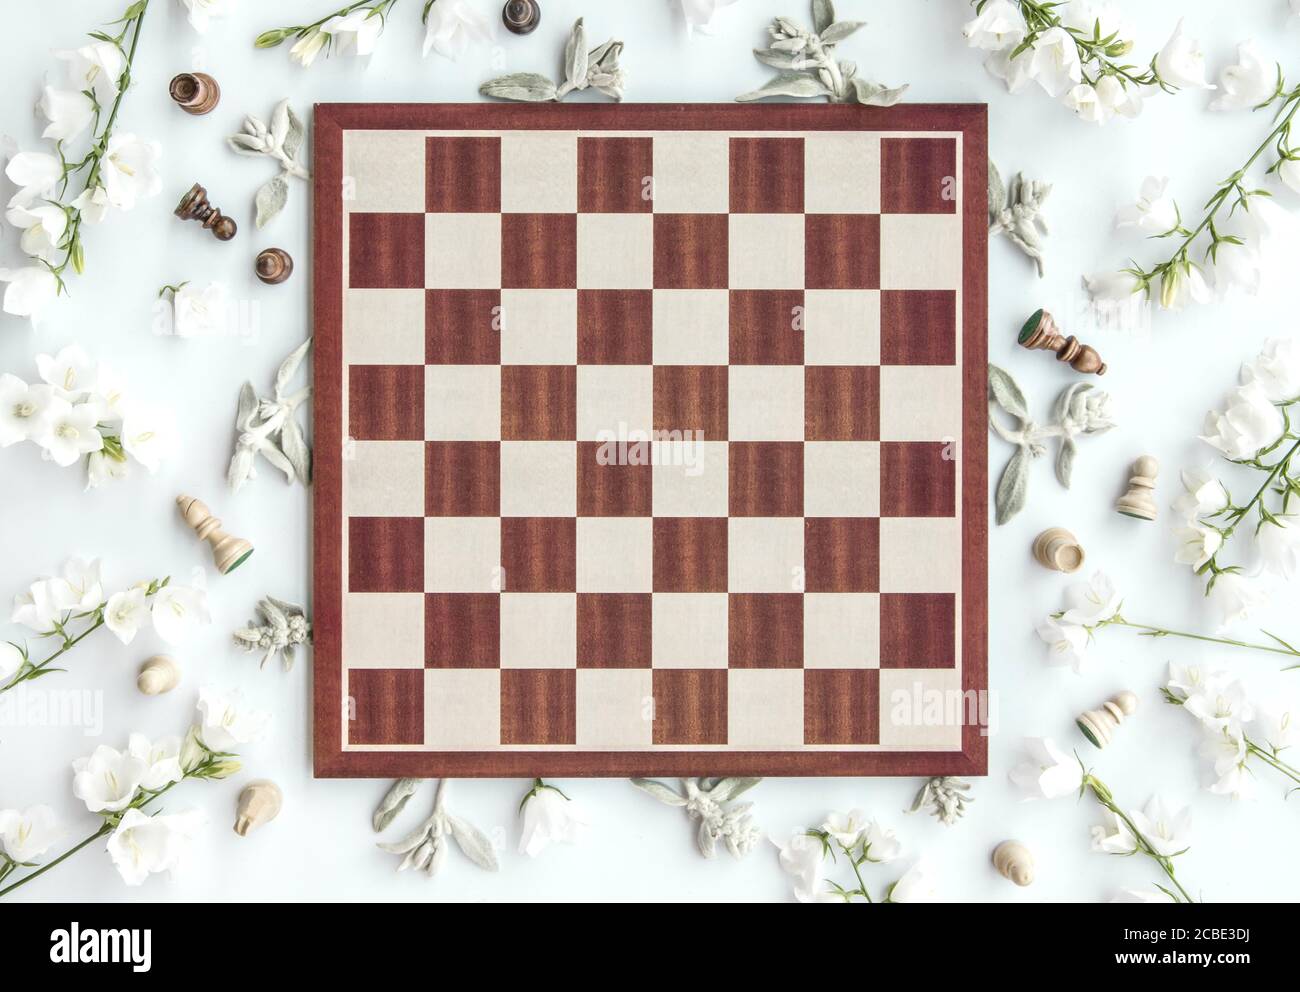 Jeu d'échecs vide, plan d'image stylisé, vue de dessus, fin de la partie Banque D'Images